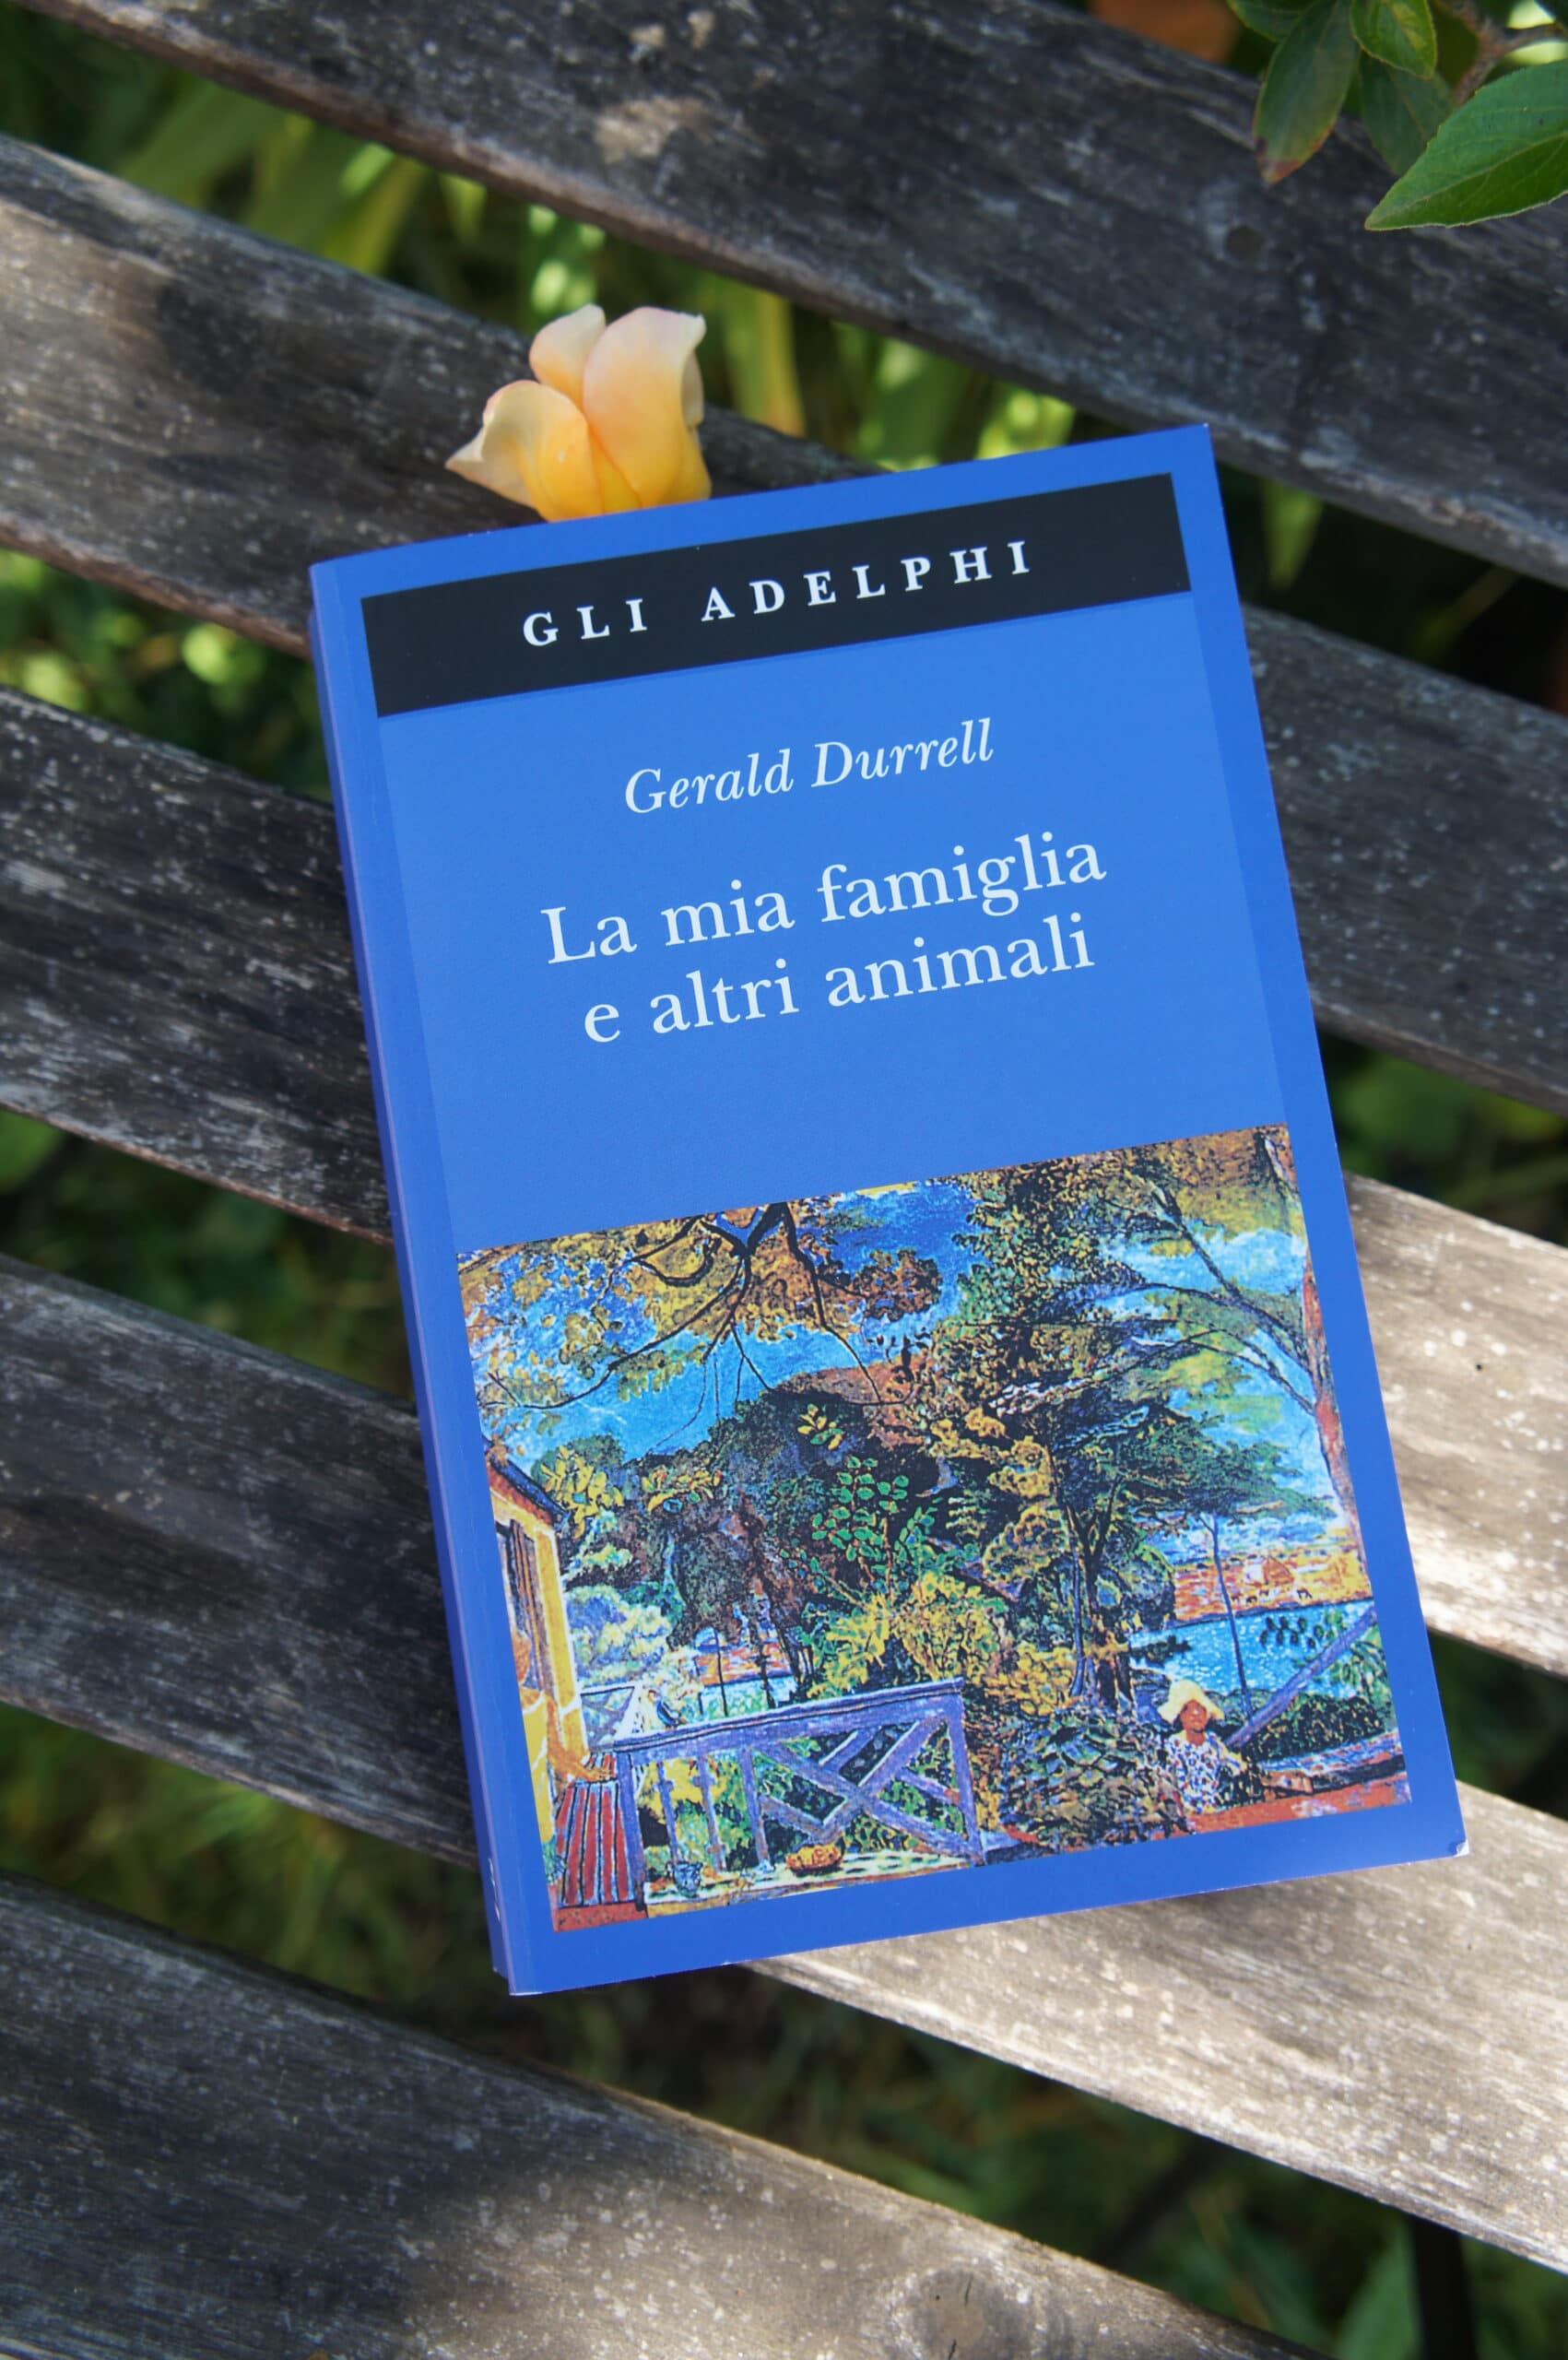 La mia famiglia e altri animali (Gerald Durrell) - Podere L'Ontano